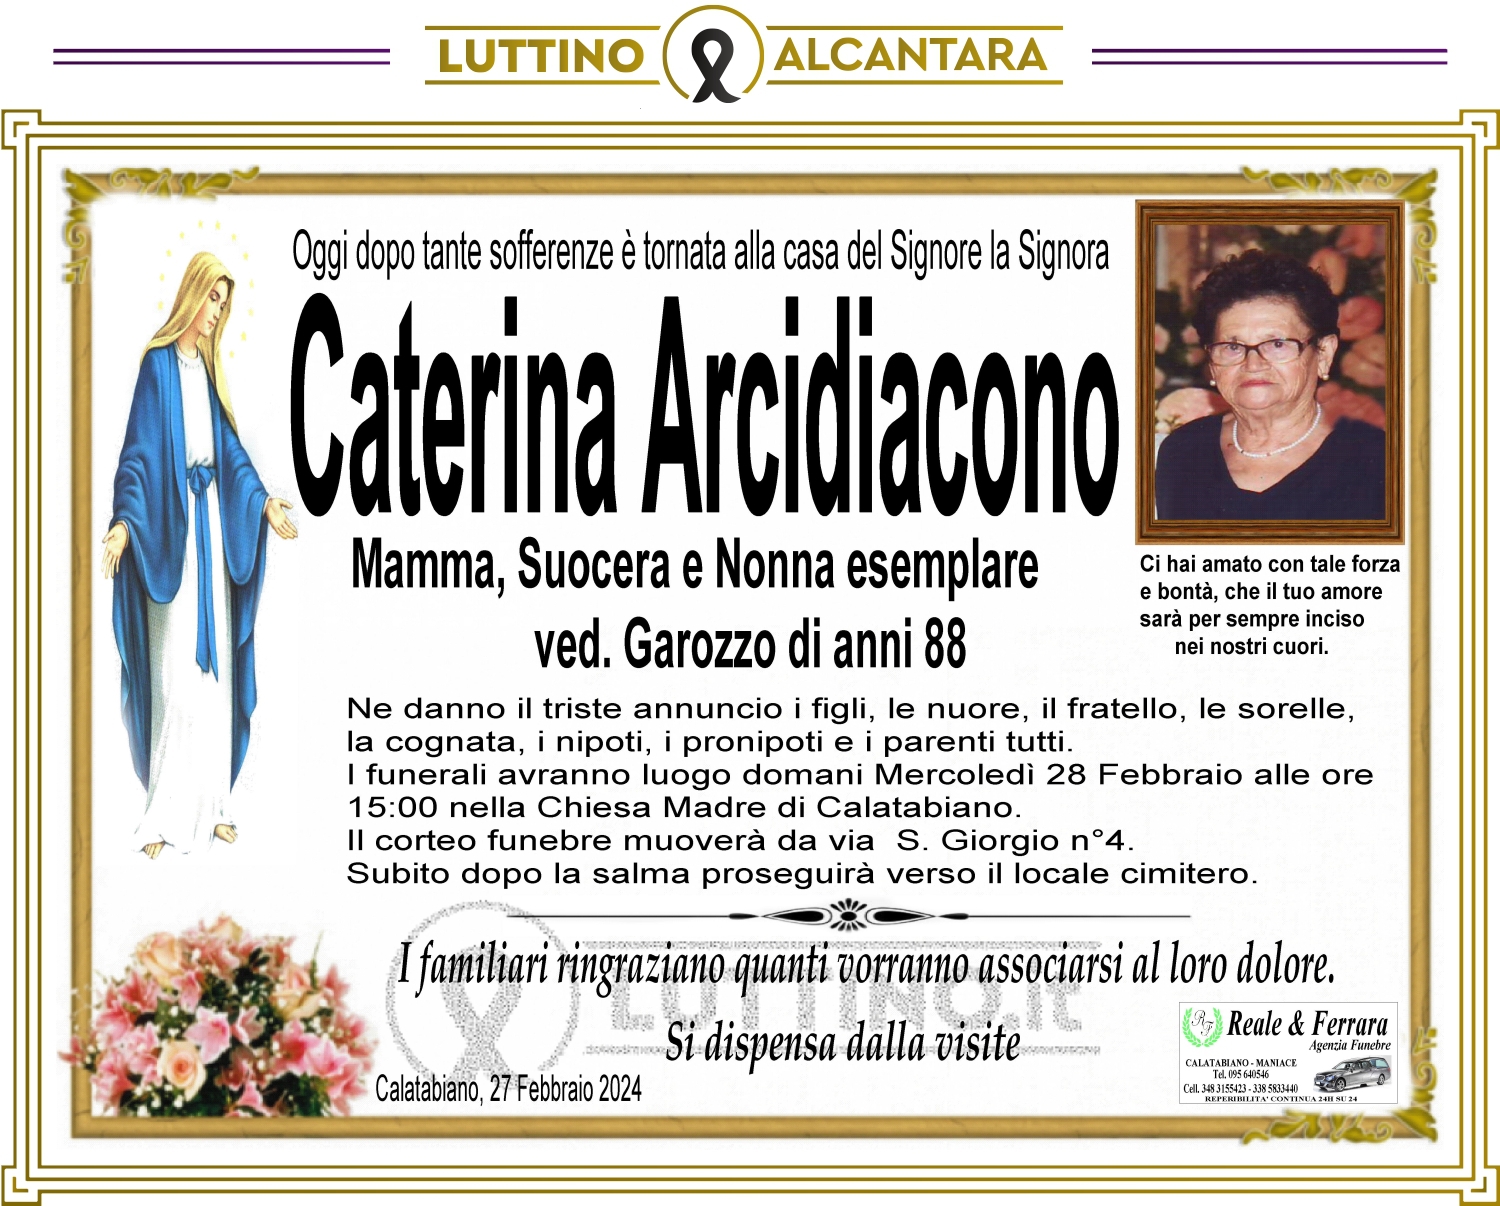 Caterina Arcidiacono